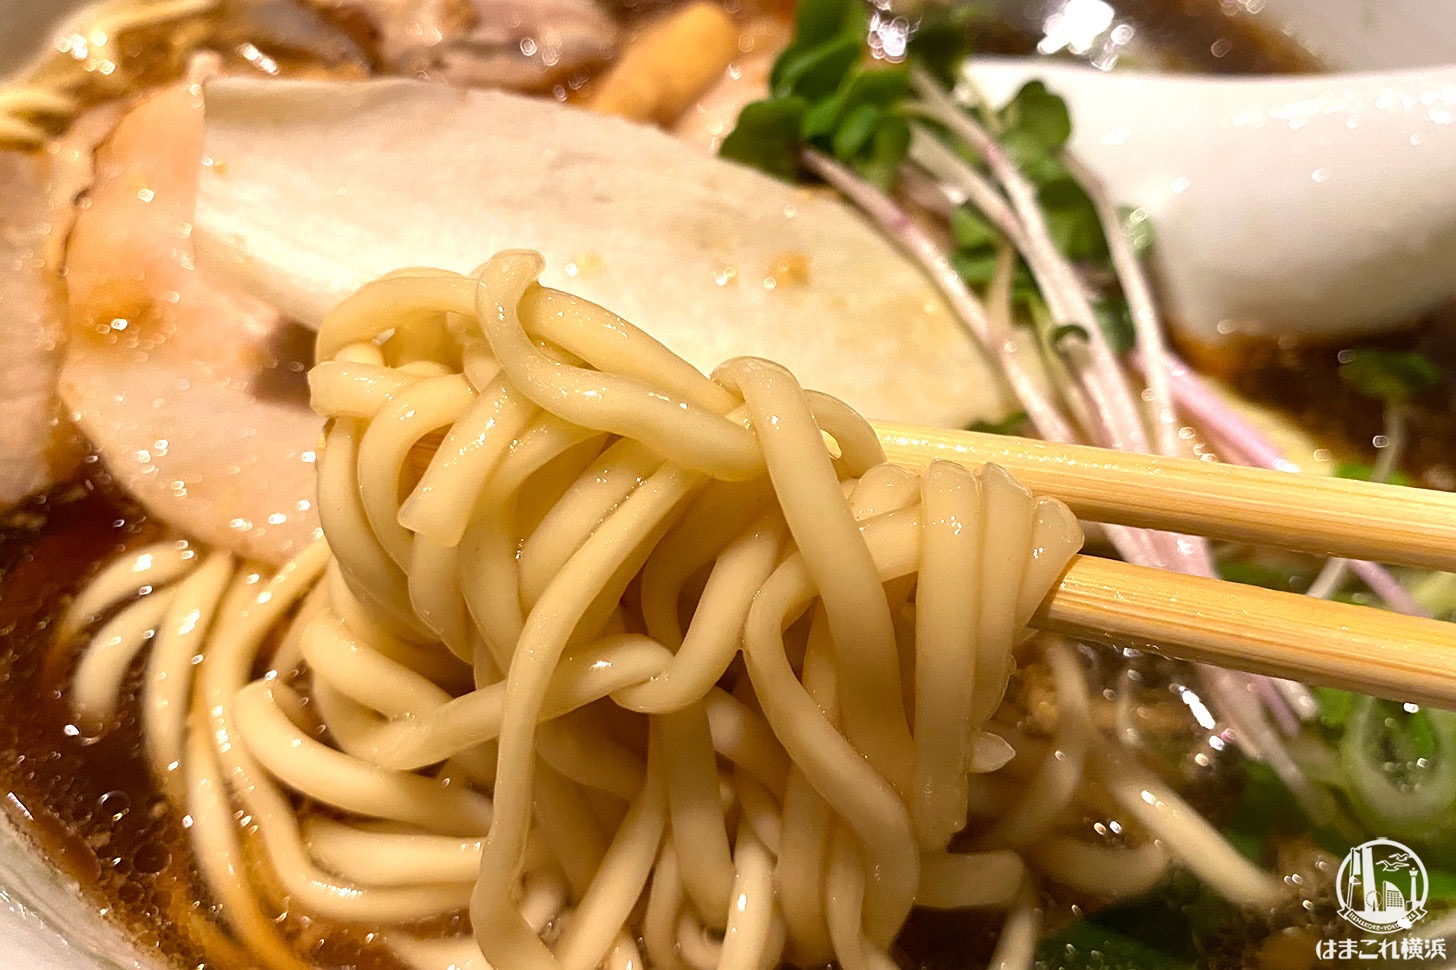 横浜・弘明寺「ロ麺ズ」醤油ラーメン 楕円の麺